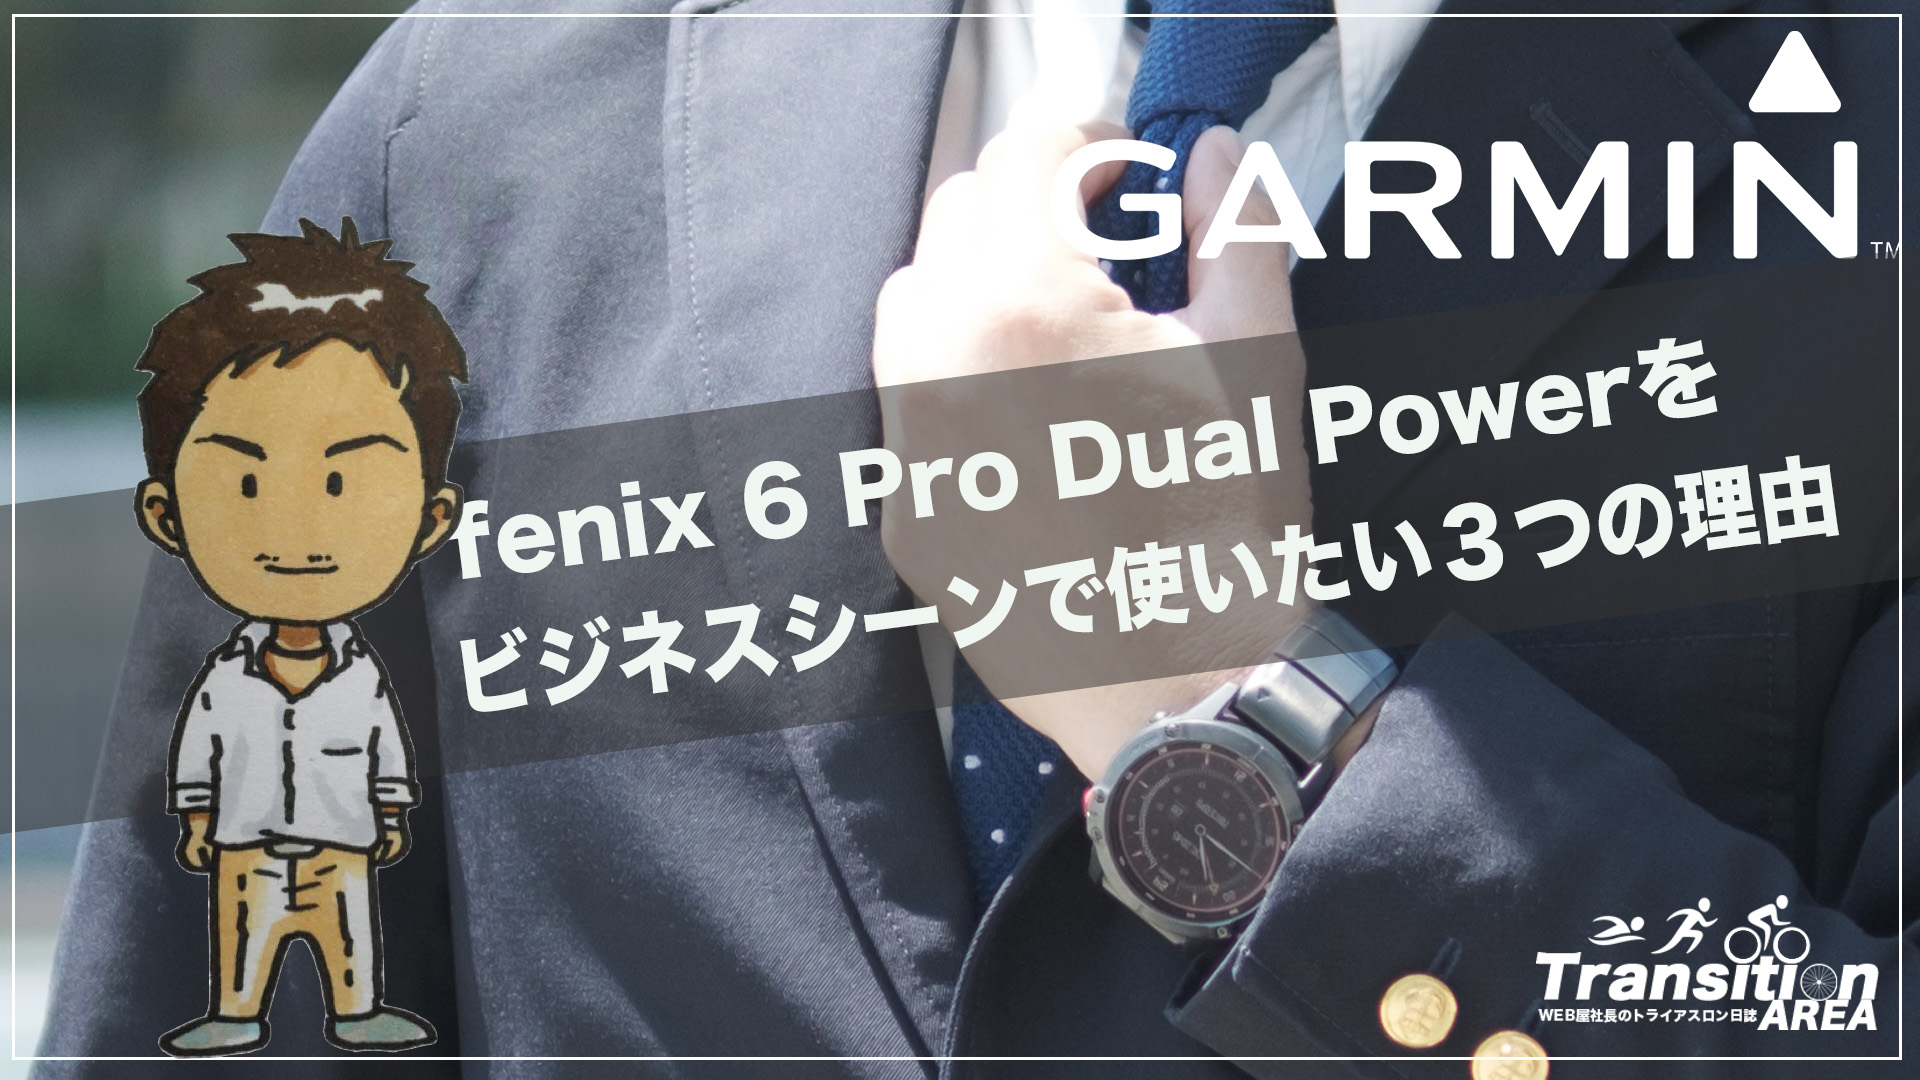 ガーミン「fenix 6 Pro Dual Power」をビジネスシーンで使いたい３つの 